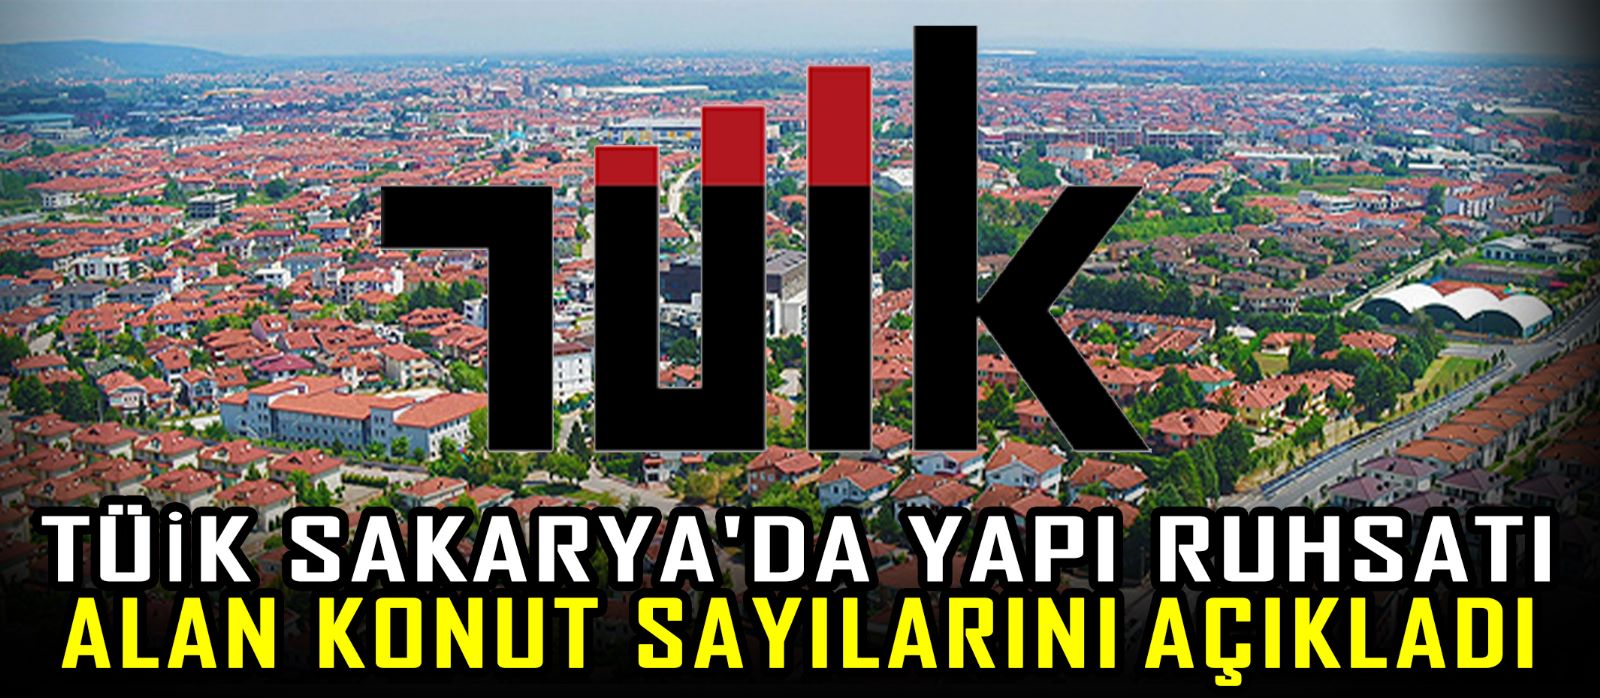 TÜİK Sakarya'da yapı ruhsatı alan konut sayılarını açıkladı